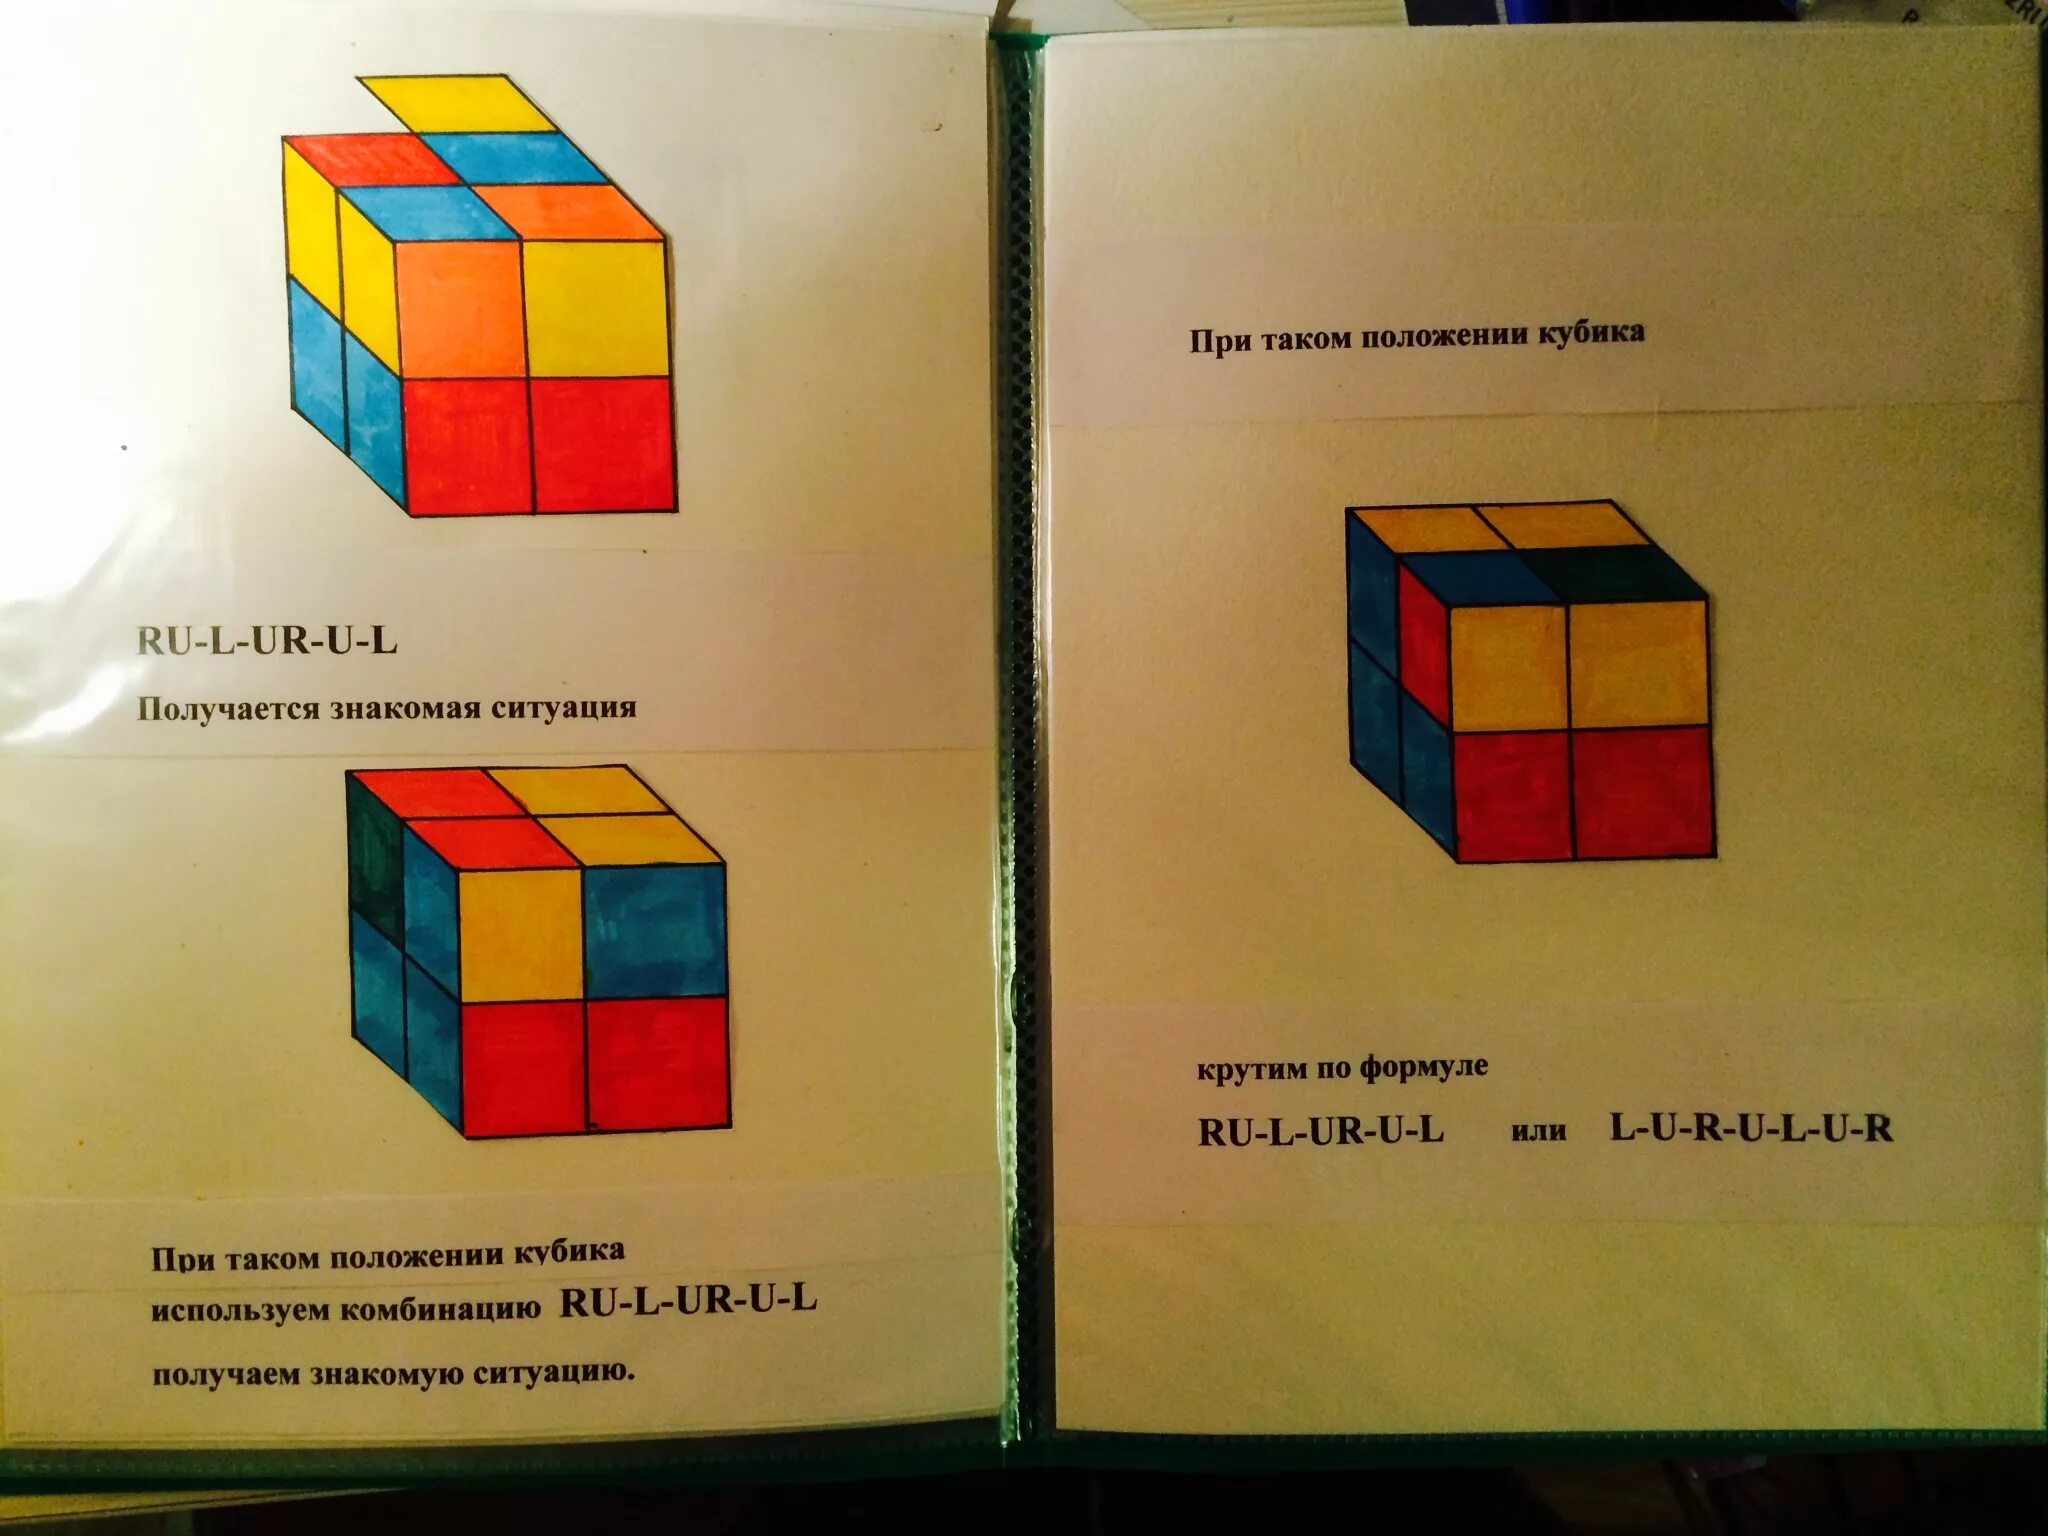 Сборка кубика рубика 2 2 3. Формула сбора кубика Рубика 2х2. Кубик рубик 2х2 формулы сборки кубика. Алгоритм сборки кубика Рубика 2 на 2. Формула сборки кубика Рубика 2 на 2.